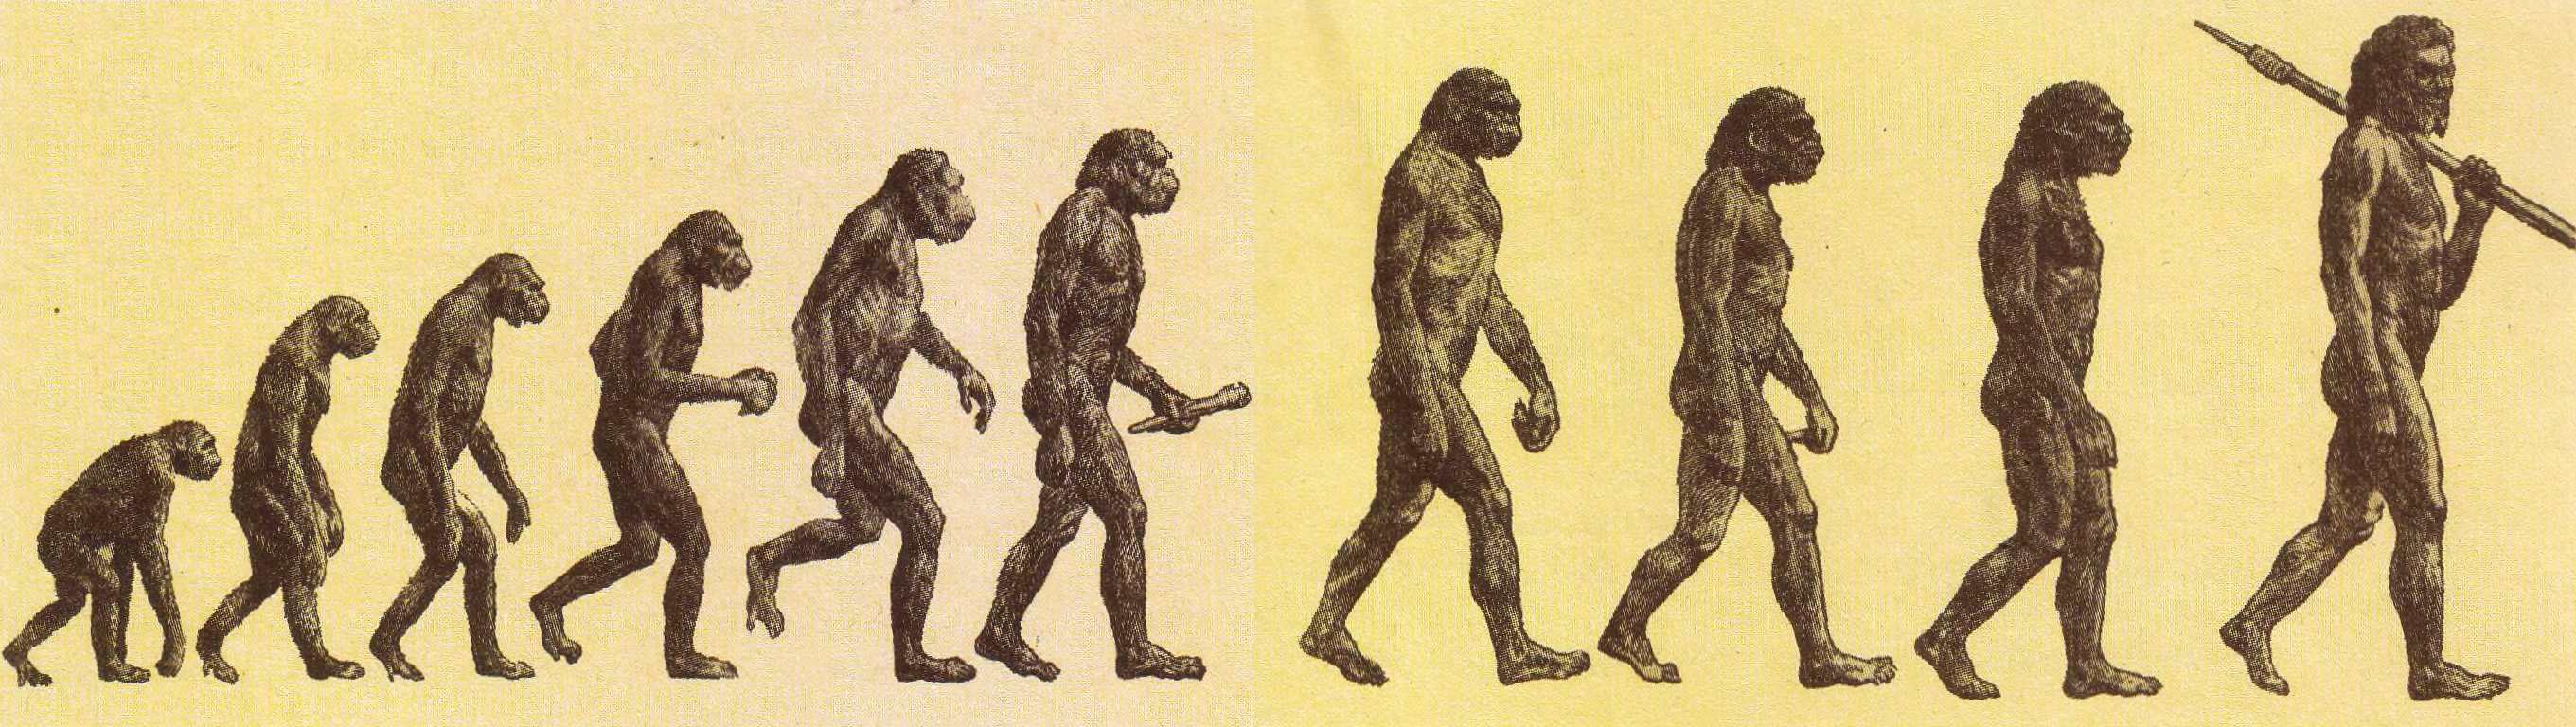 Как произошел самый 1 человек. Теория эволюции Дарвина. Дарвин теория эволюции и происхождения человека. Теория Дарвина о происхождении человека.